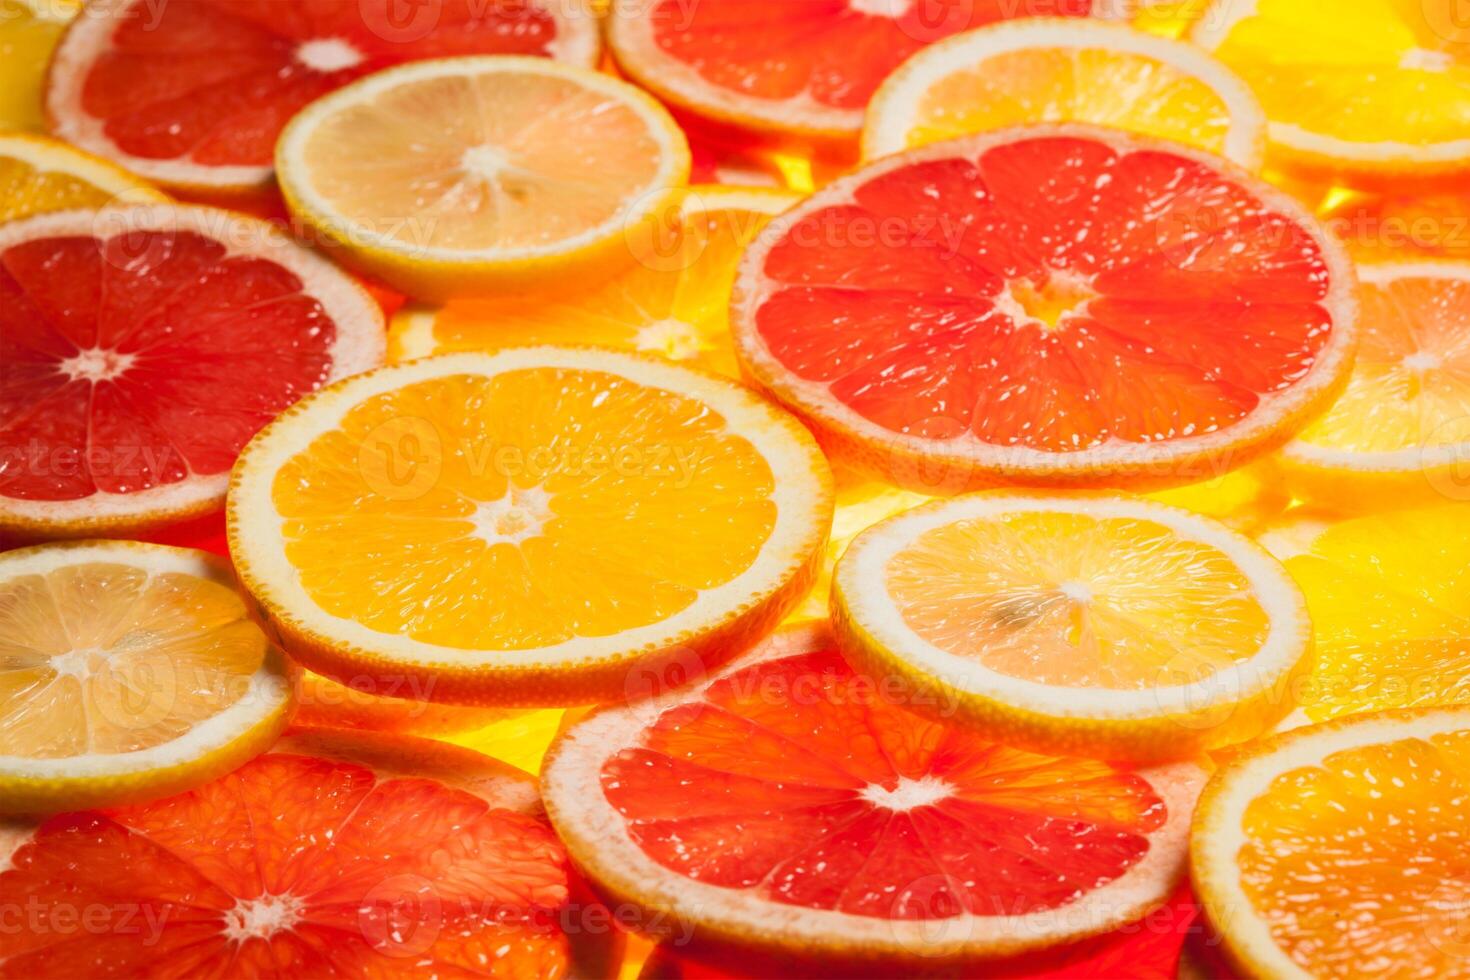 Colorful citrus fruit slices photo